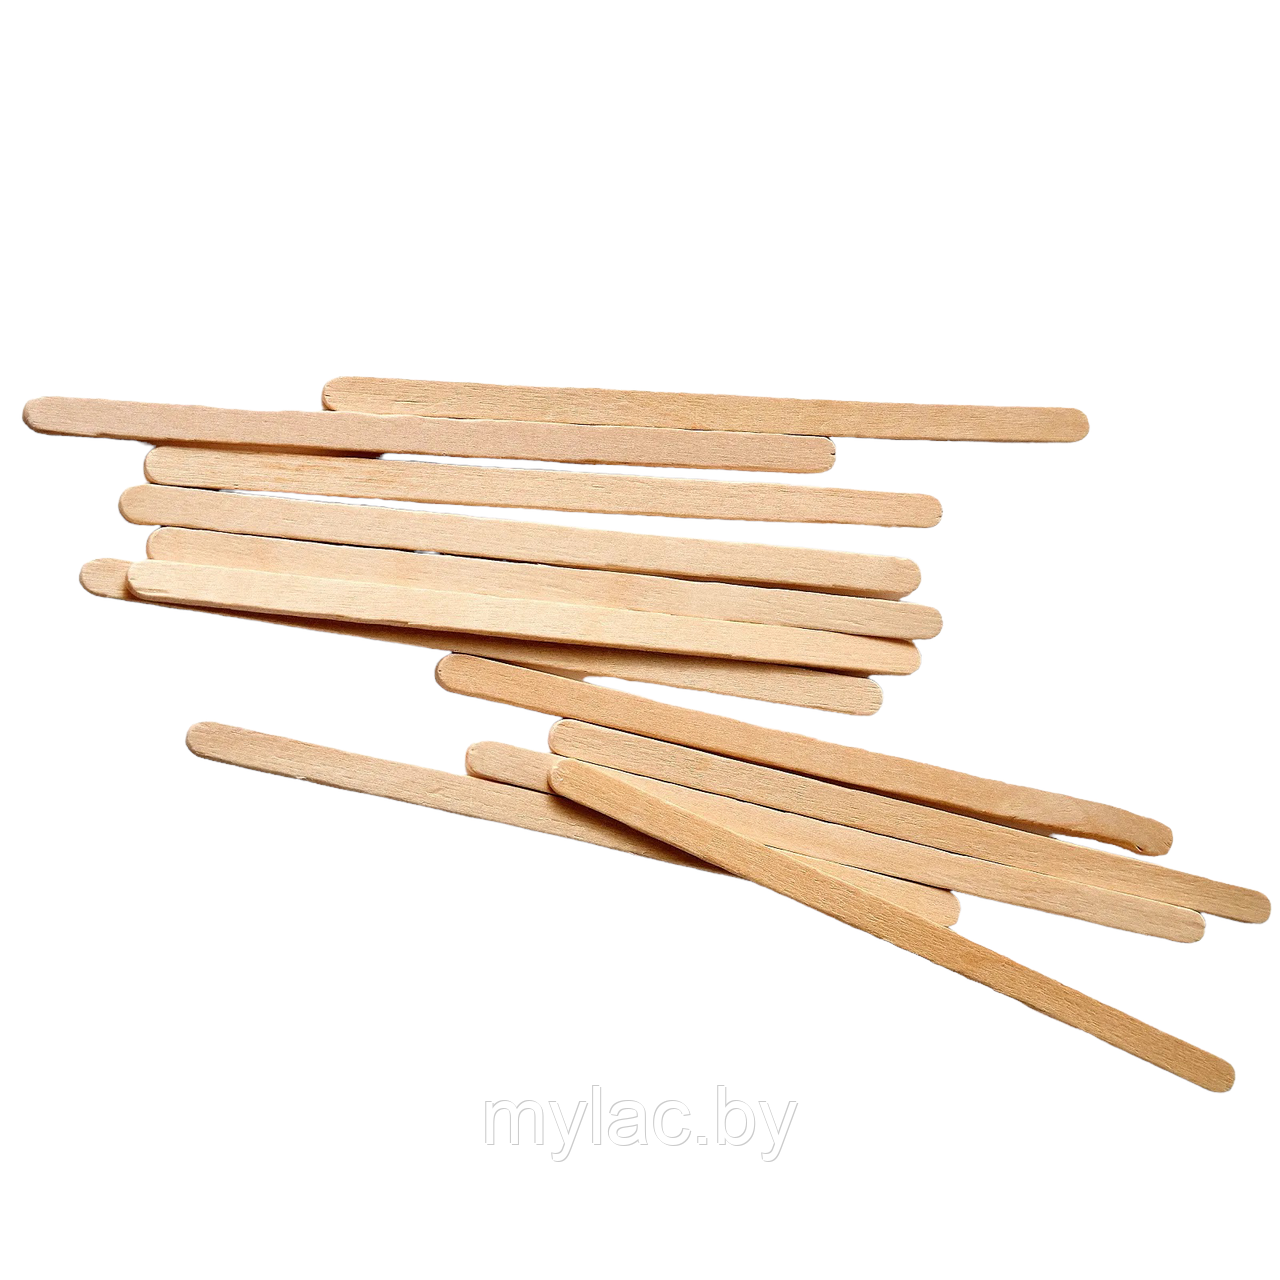 Шпатели узкие для депиляции деревянные одноразовые, Размер: 140 х 6 х 1.8 мм, 10 шт.